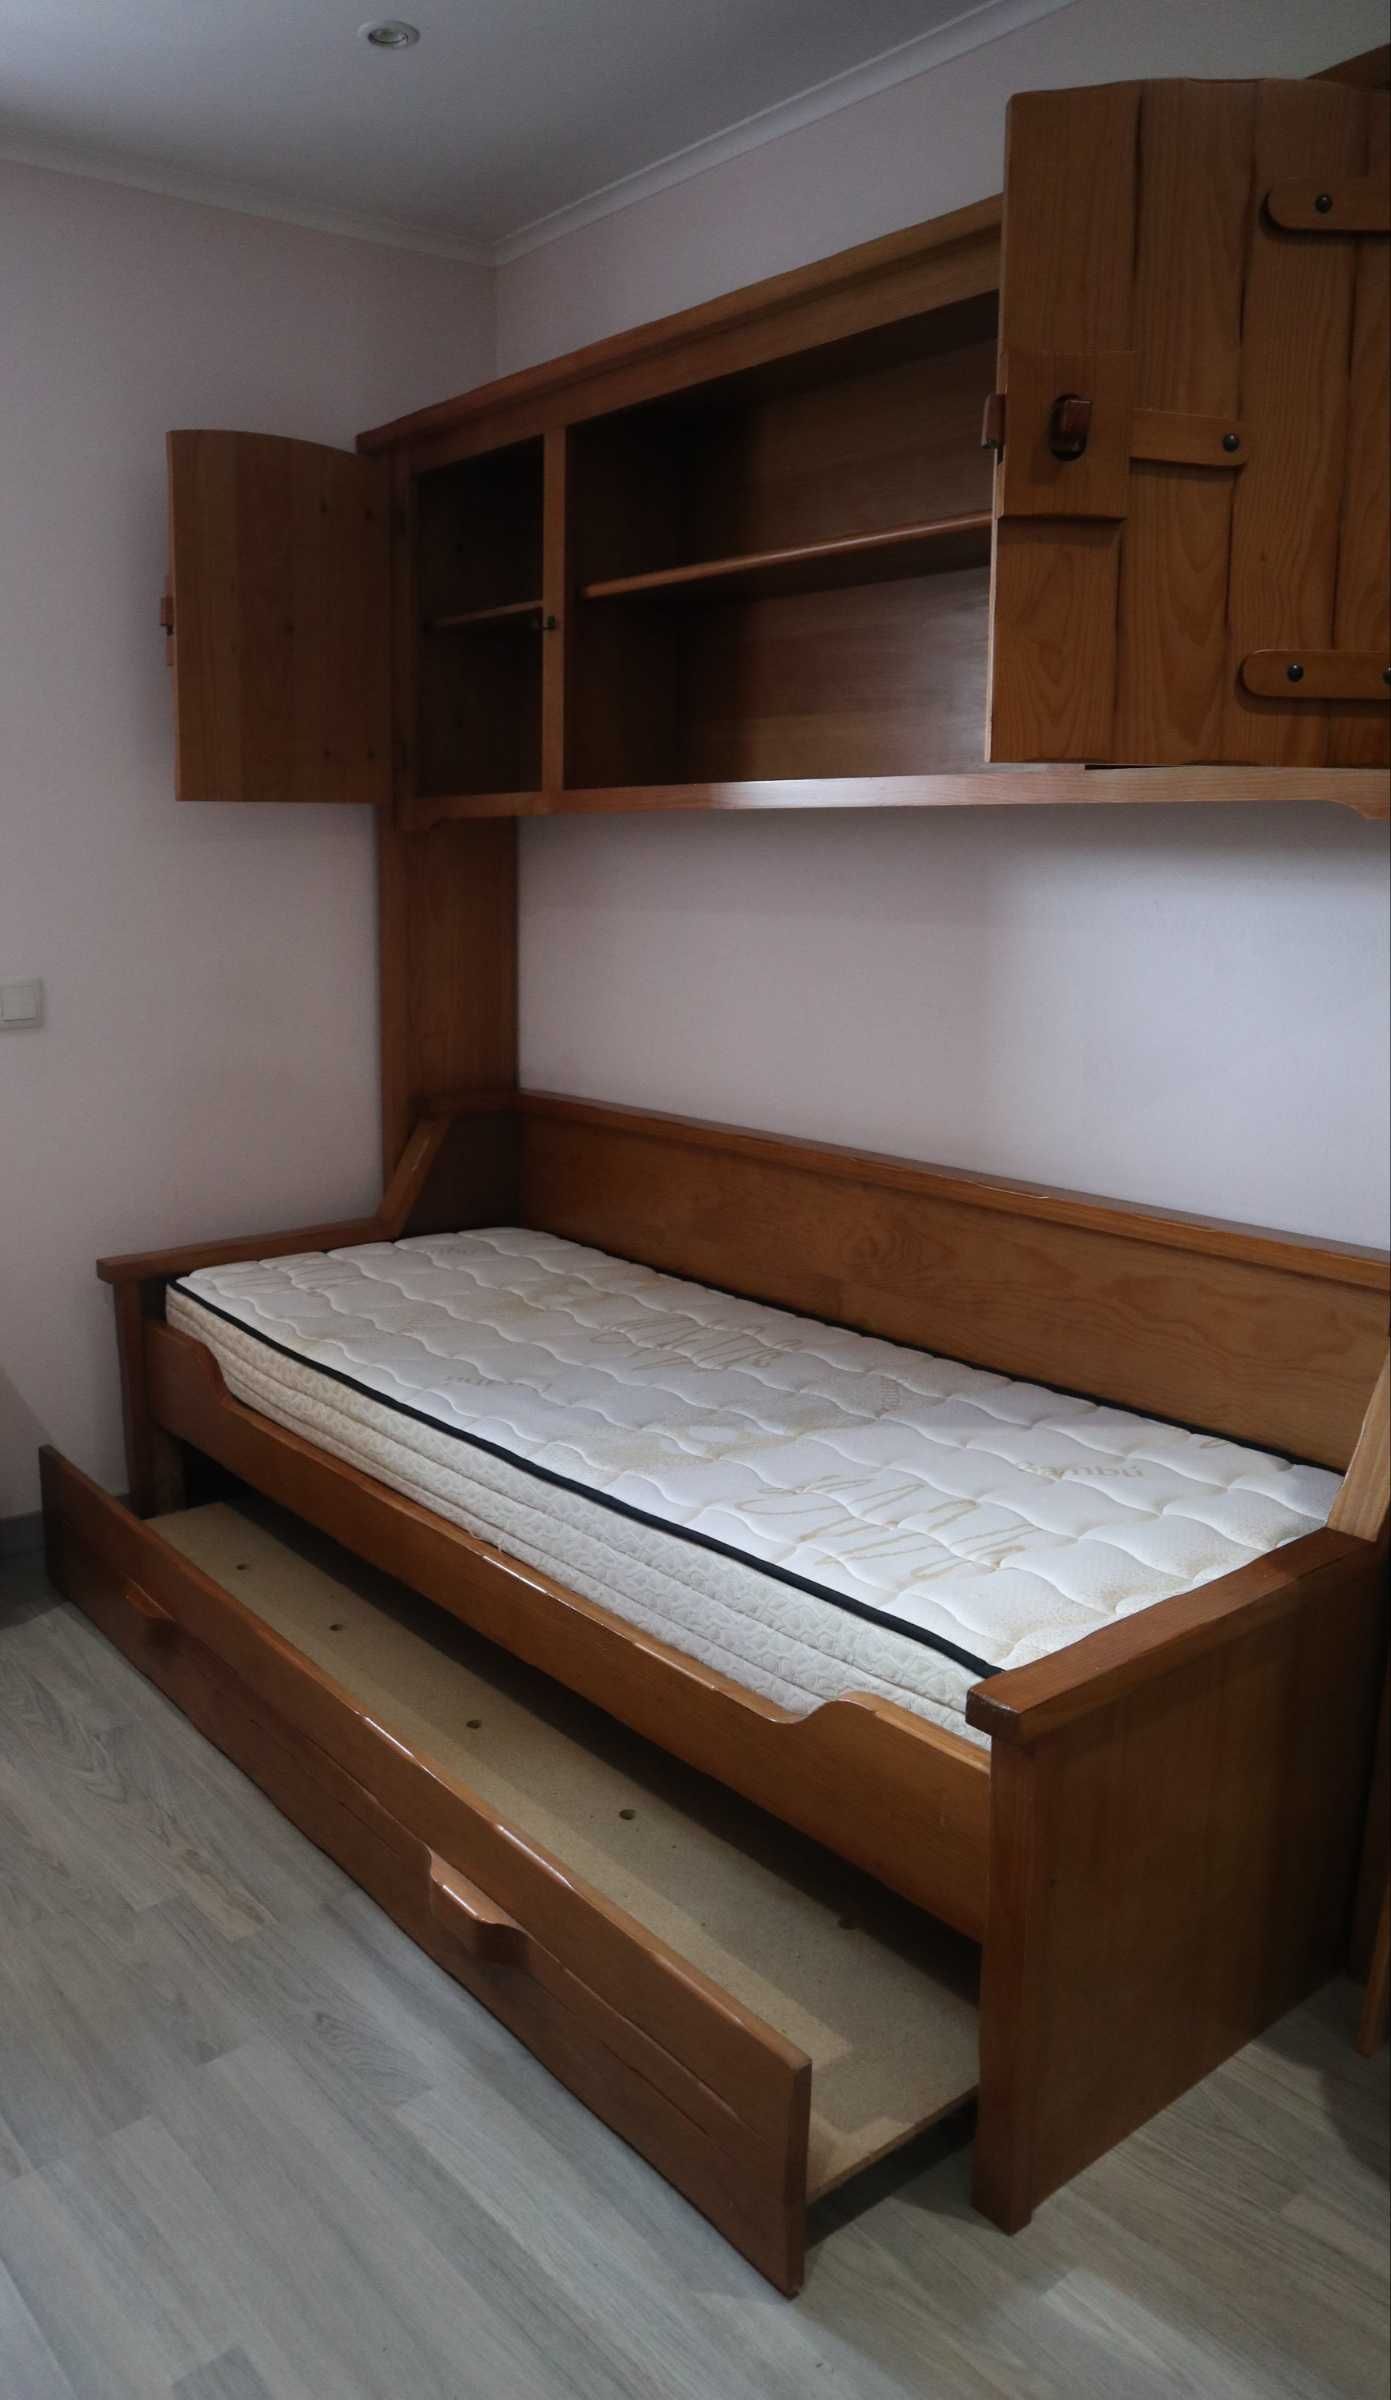 Estúdio (cama+estante+roupeiro+colchão)